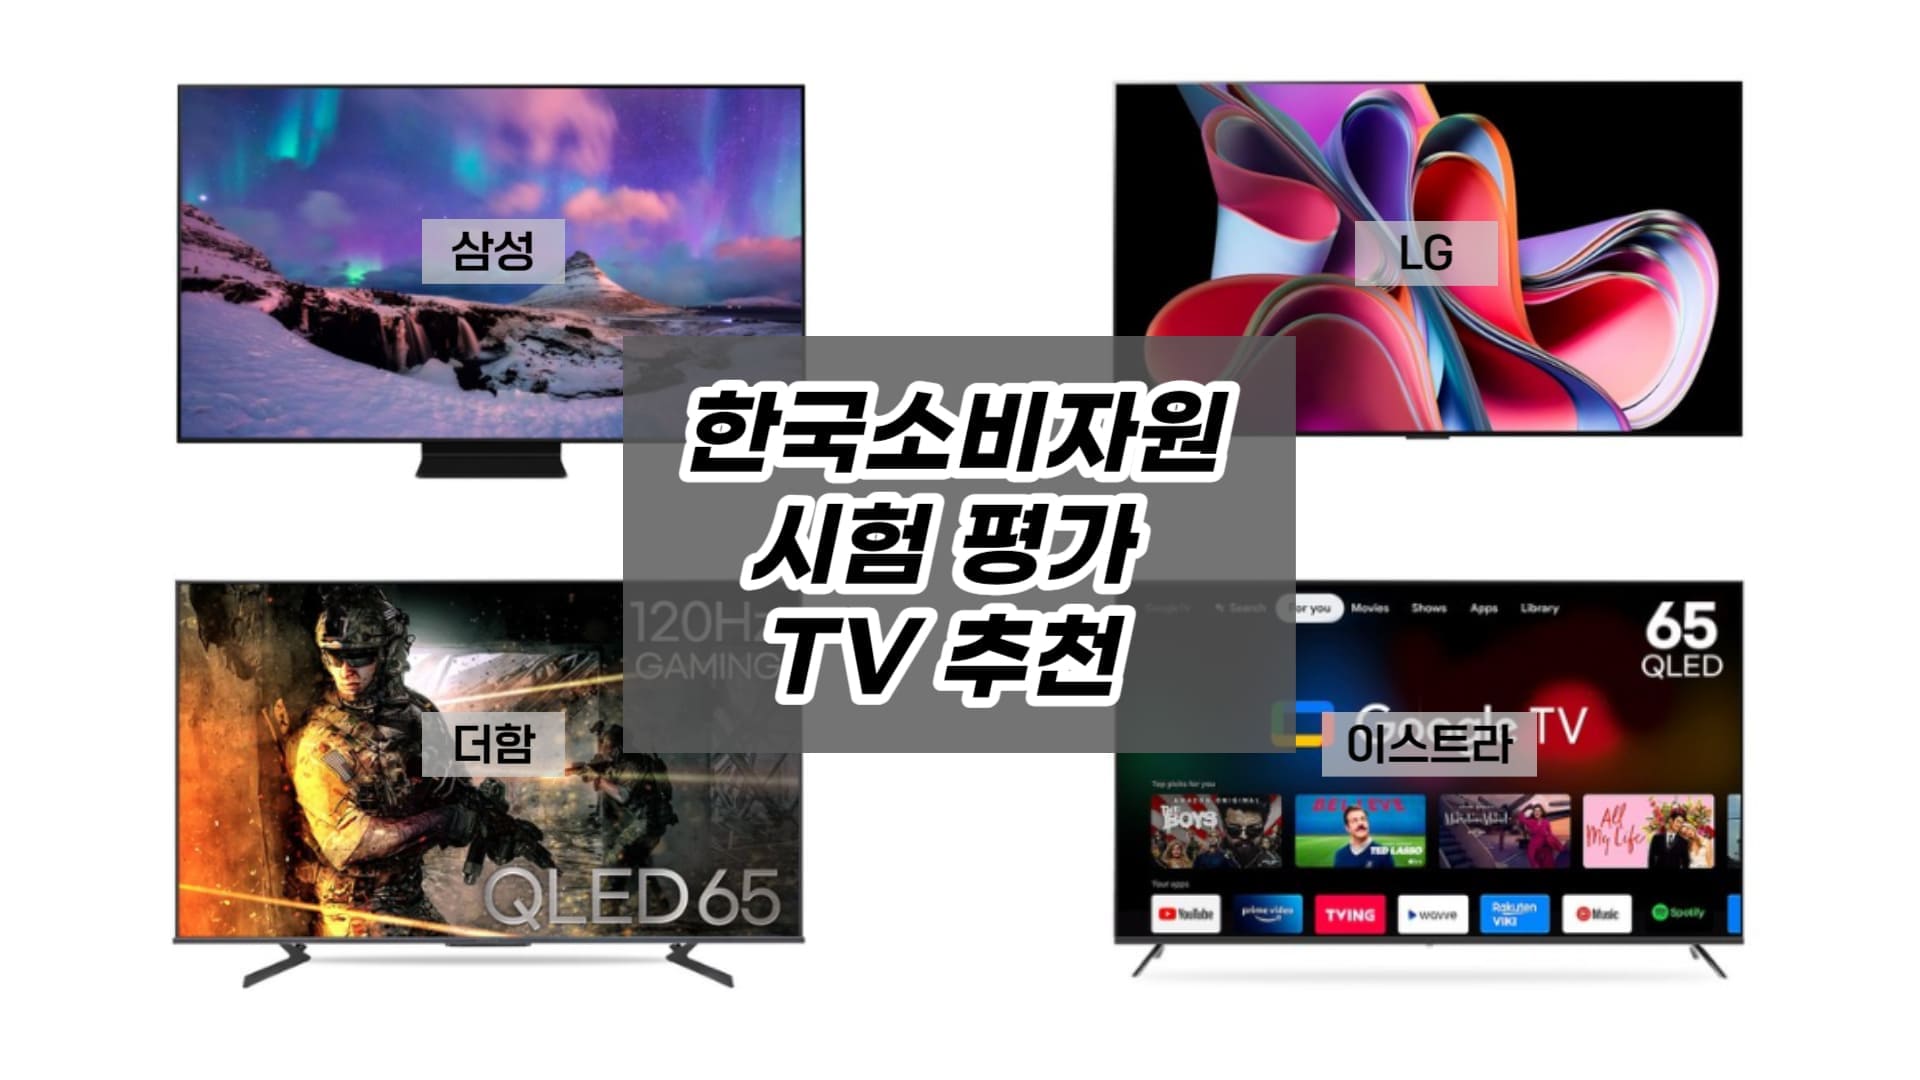 2022년 한국소비자원 시험 평가 TV 중 삼성 LG 더함 이스트라 제품